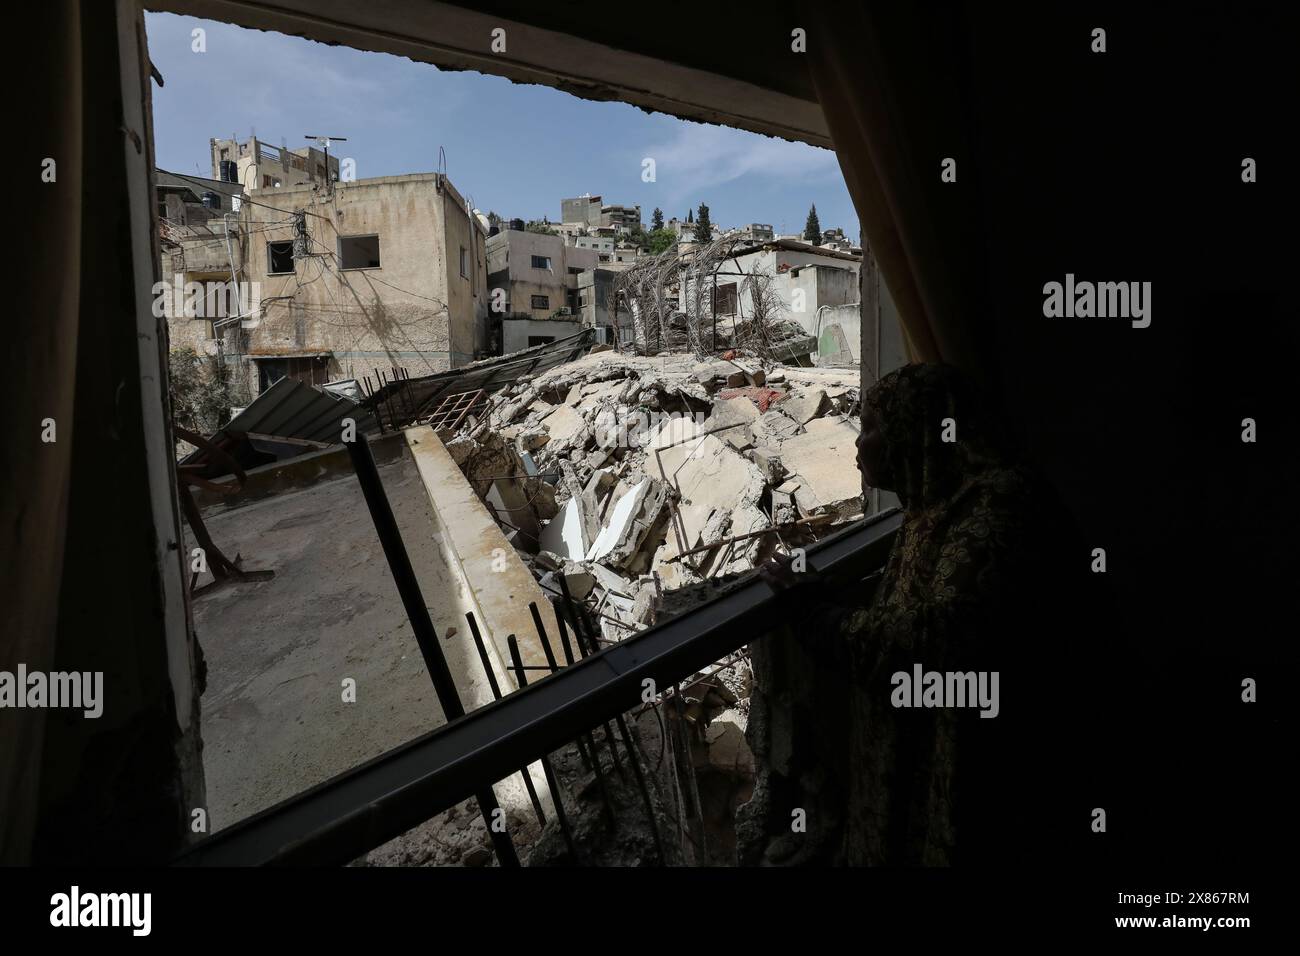 Jenin. 23 mai 2024. Un palestinien vérifie les débris de construction après une opération militaire israélienne dans la ville de Djénine en Cisjordanie, le 23 mai 2024. L'armée israélienne s'est retirée jeudi de Djénine en Cisjordanie et de son camp de réfugiés après trois jours d'opération militaire, tuant 12 Palestiniens et en blessant 25 autres, ont déclaré des sources sécuritaires palestiniennes. Des sources sécuritaires palestiniennes ont déclaré à Xinhua que les forces israéliennes avaient pris d'assaut la ville de Djénine et son camp mardi matin. Crédit : Nidal Eshtayeh/Xinhua/Alamy Live News Banque D'Images